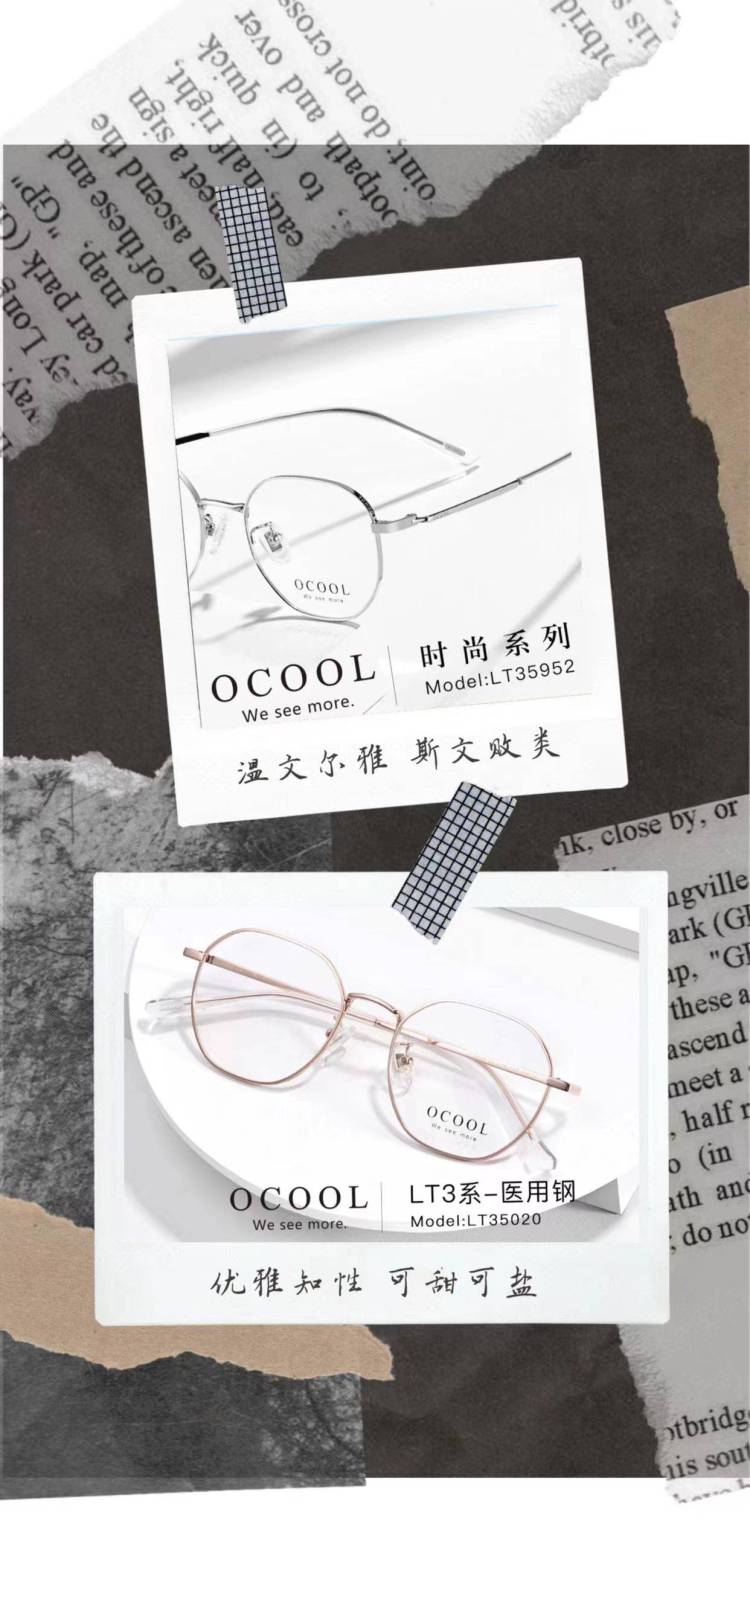 ocool眼镜-内蒙古自治区·乌海市·海勃湾区-ocool品牌眼镜  轻奢 高佣 一件带发 粉丝500+达人-代理  一件代发 轻奢 有意快来报名